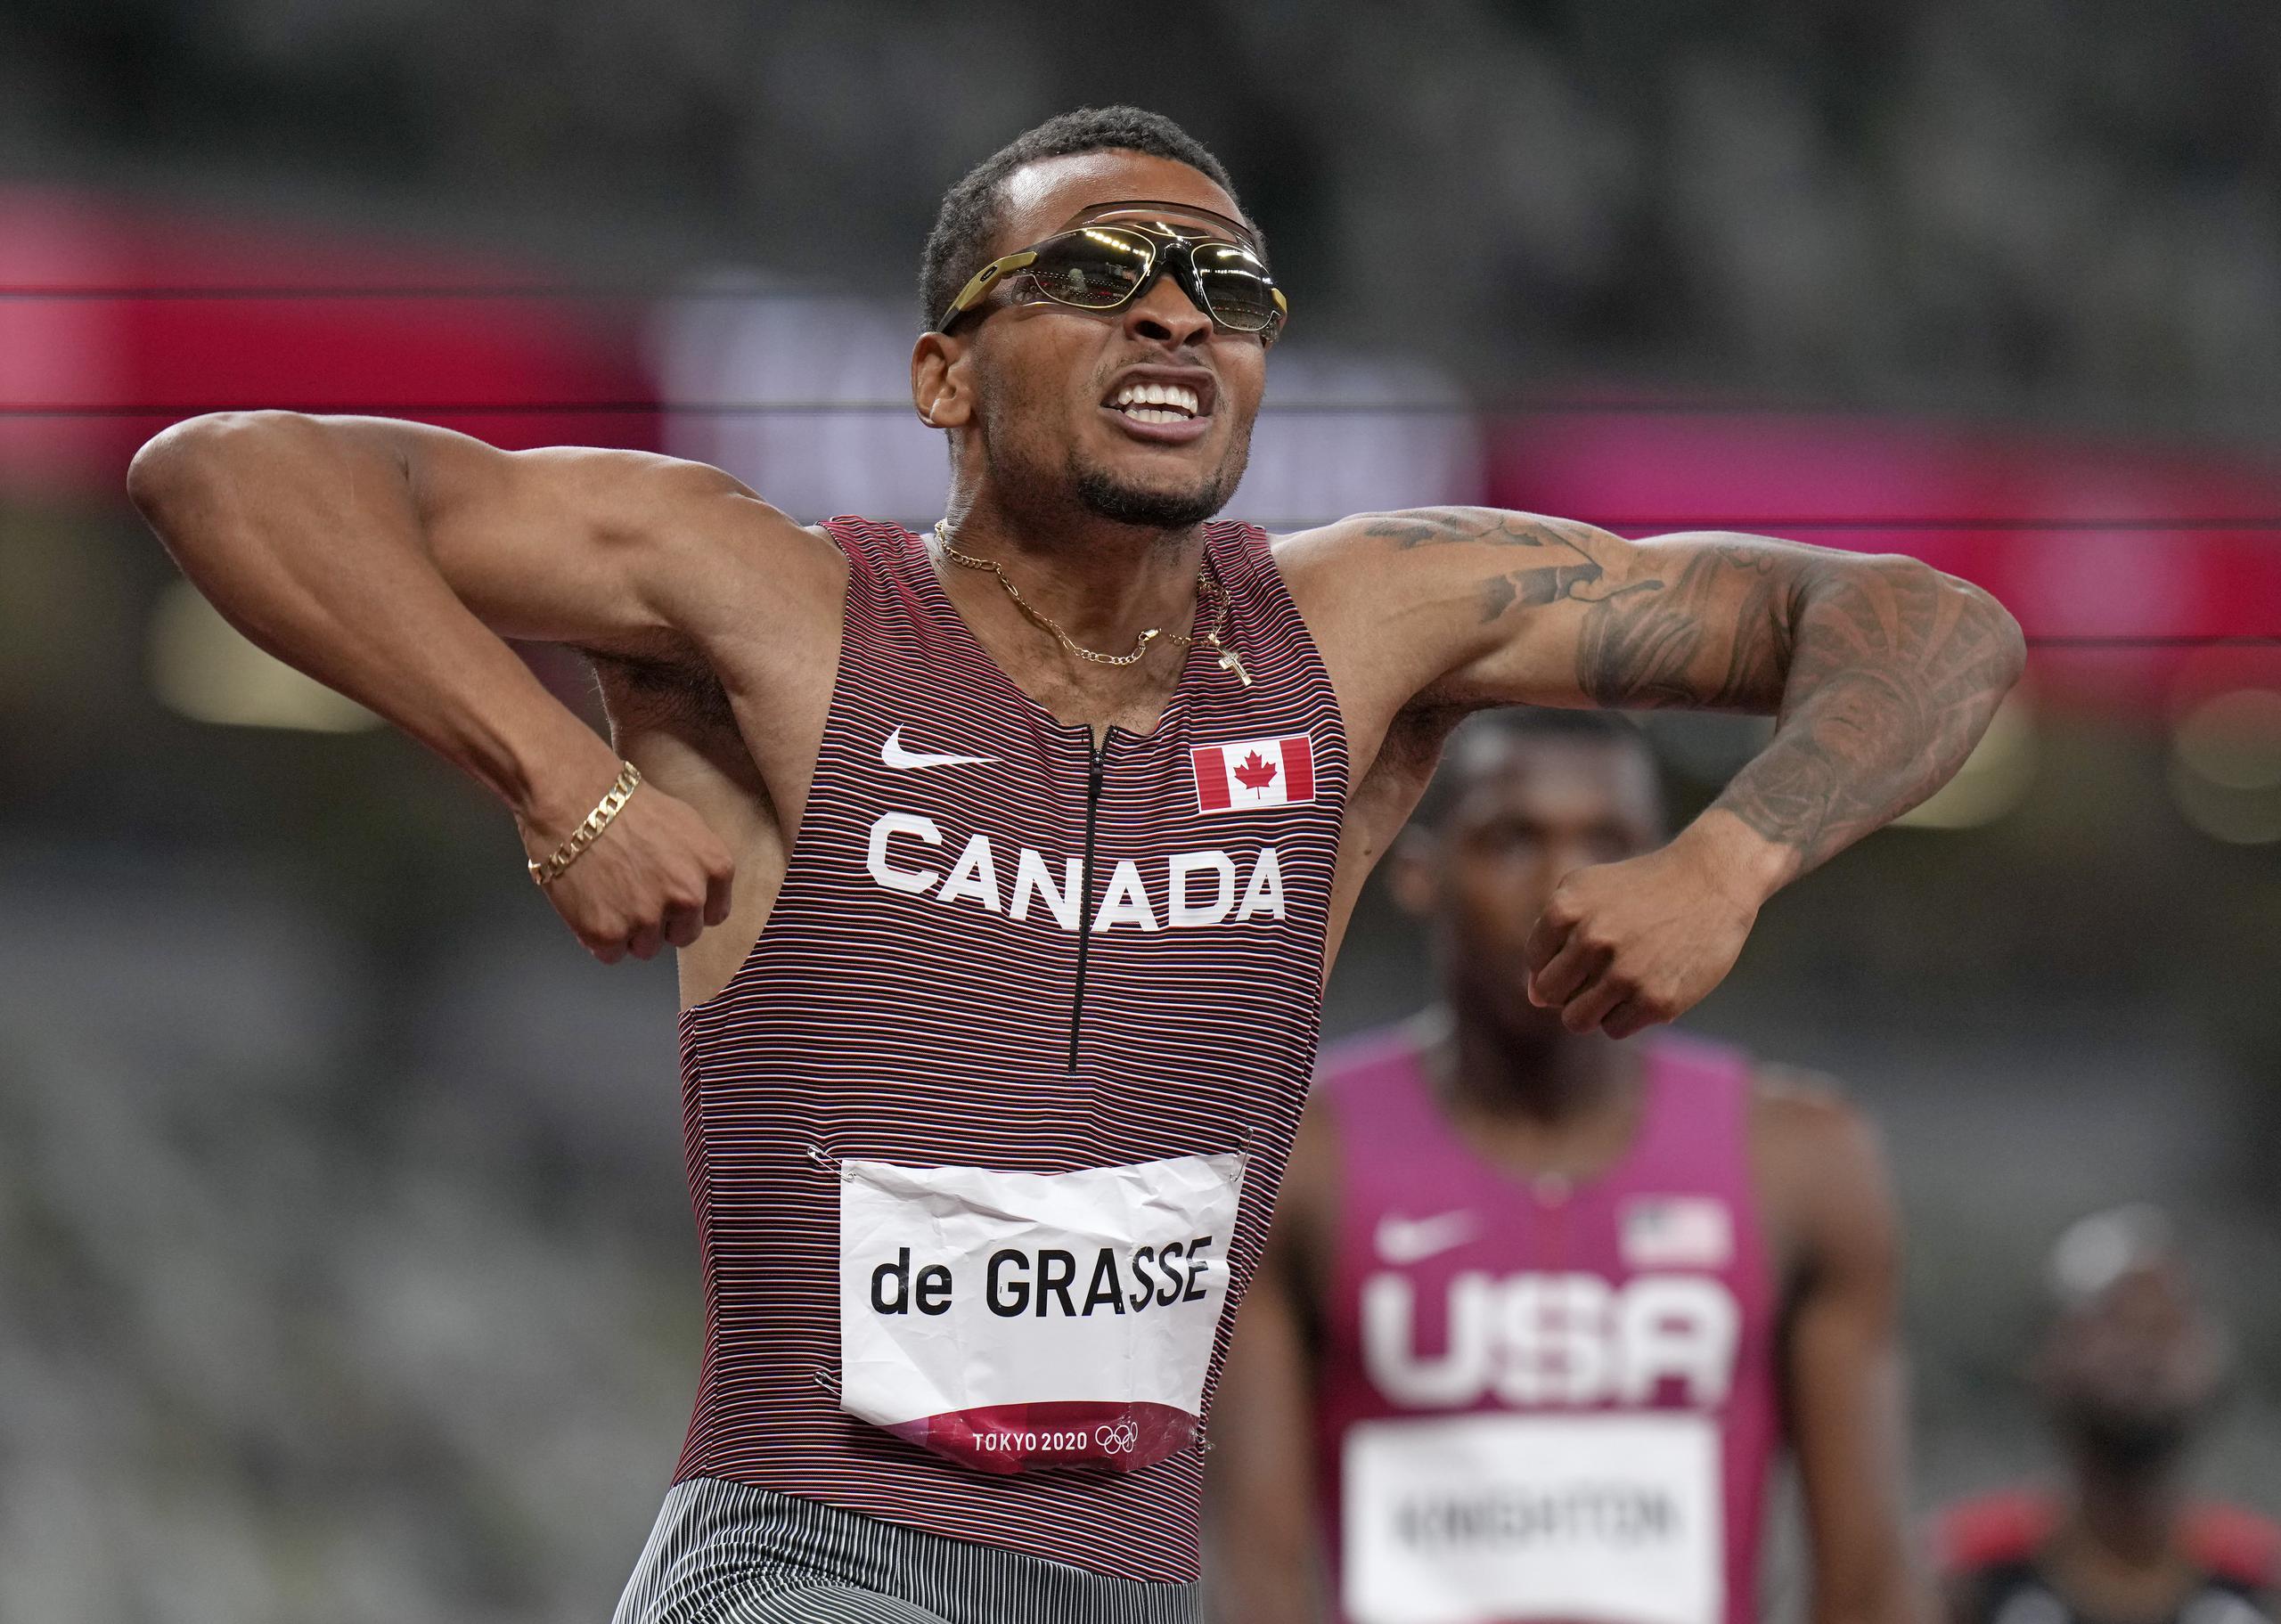 El canadiense Andre De Grasse celebra tras ganar los 200 metros en los Juegos Olímpicos de Tokio. Este fue el atleta que en Río 2016 empujó  Usain Bolt a tener que apretar el acelerador en una prueba semifinal del evento de 100 metros que se convirtió en viral entonces.